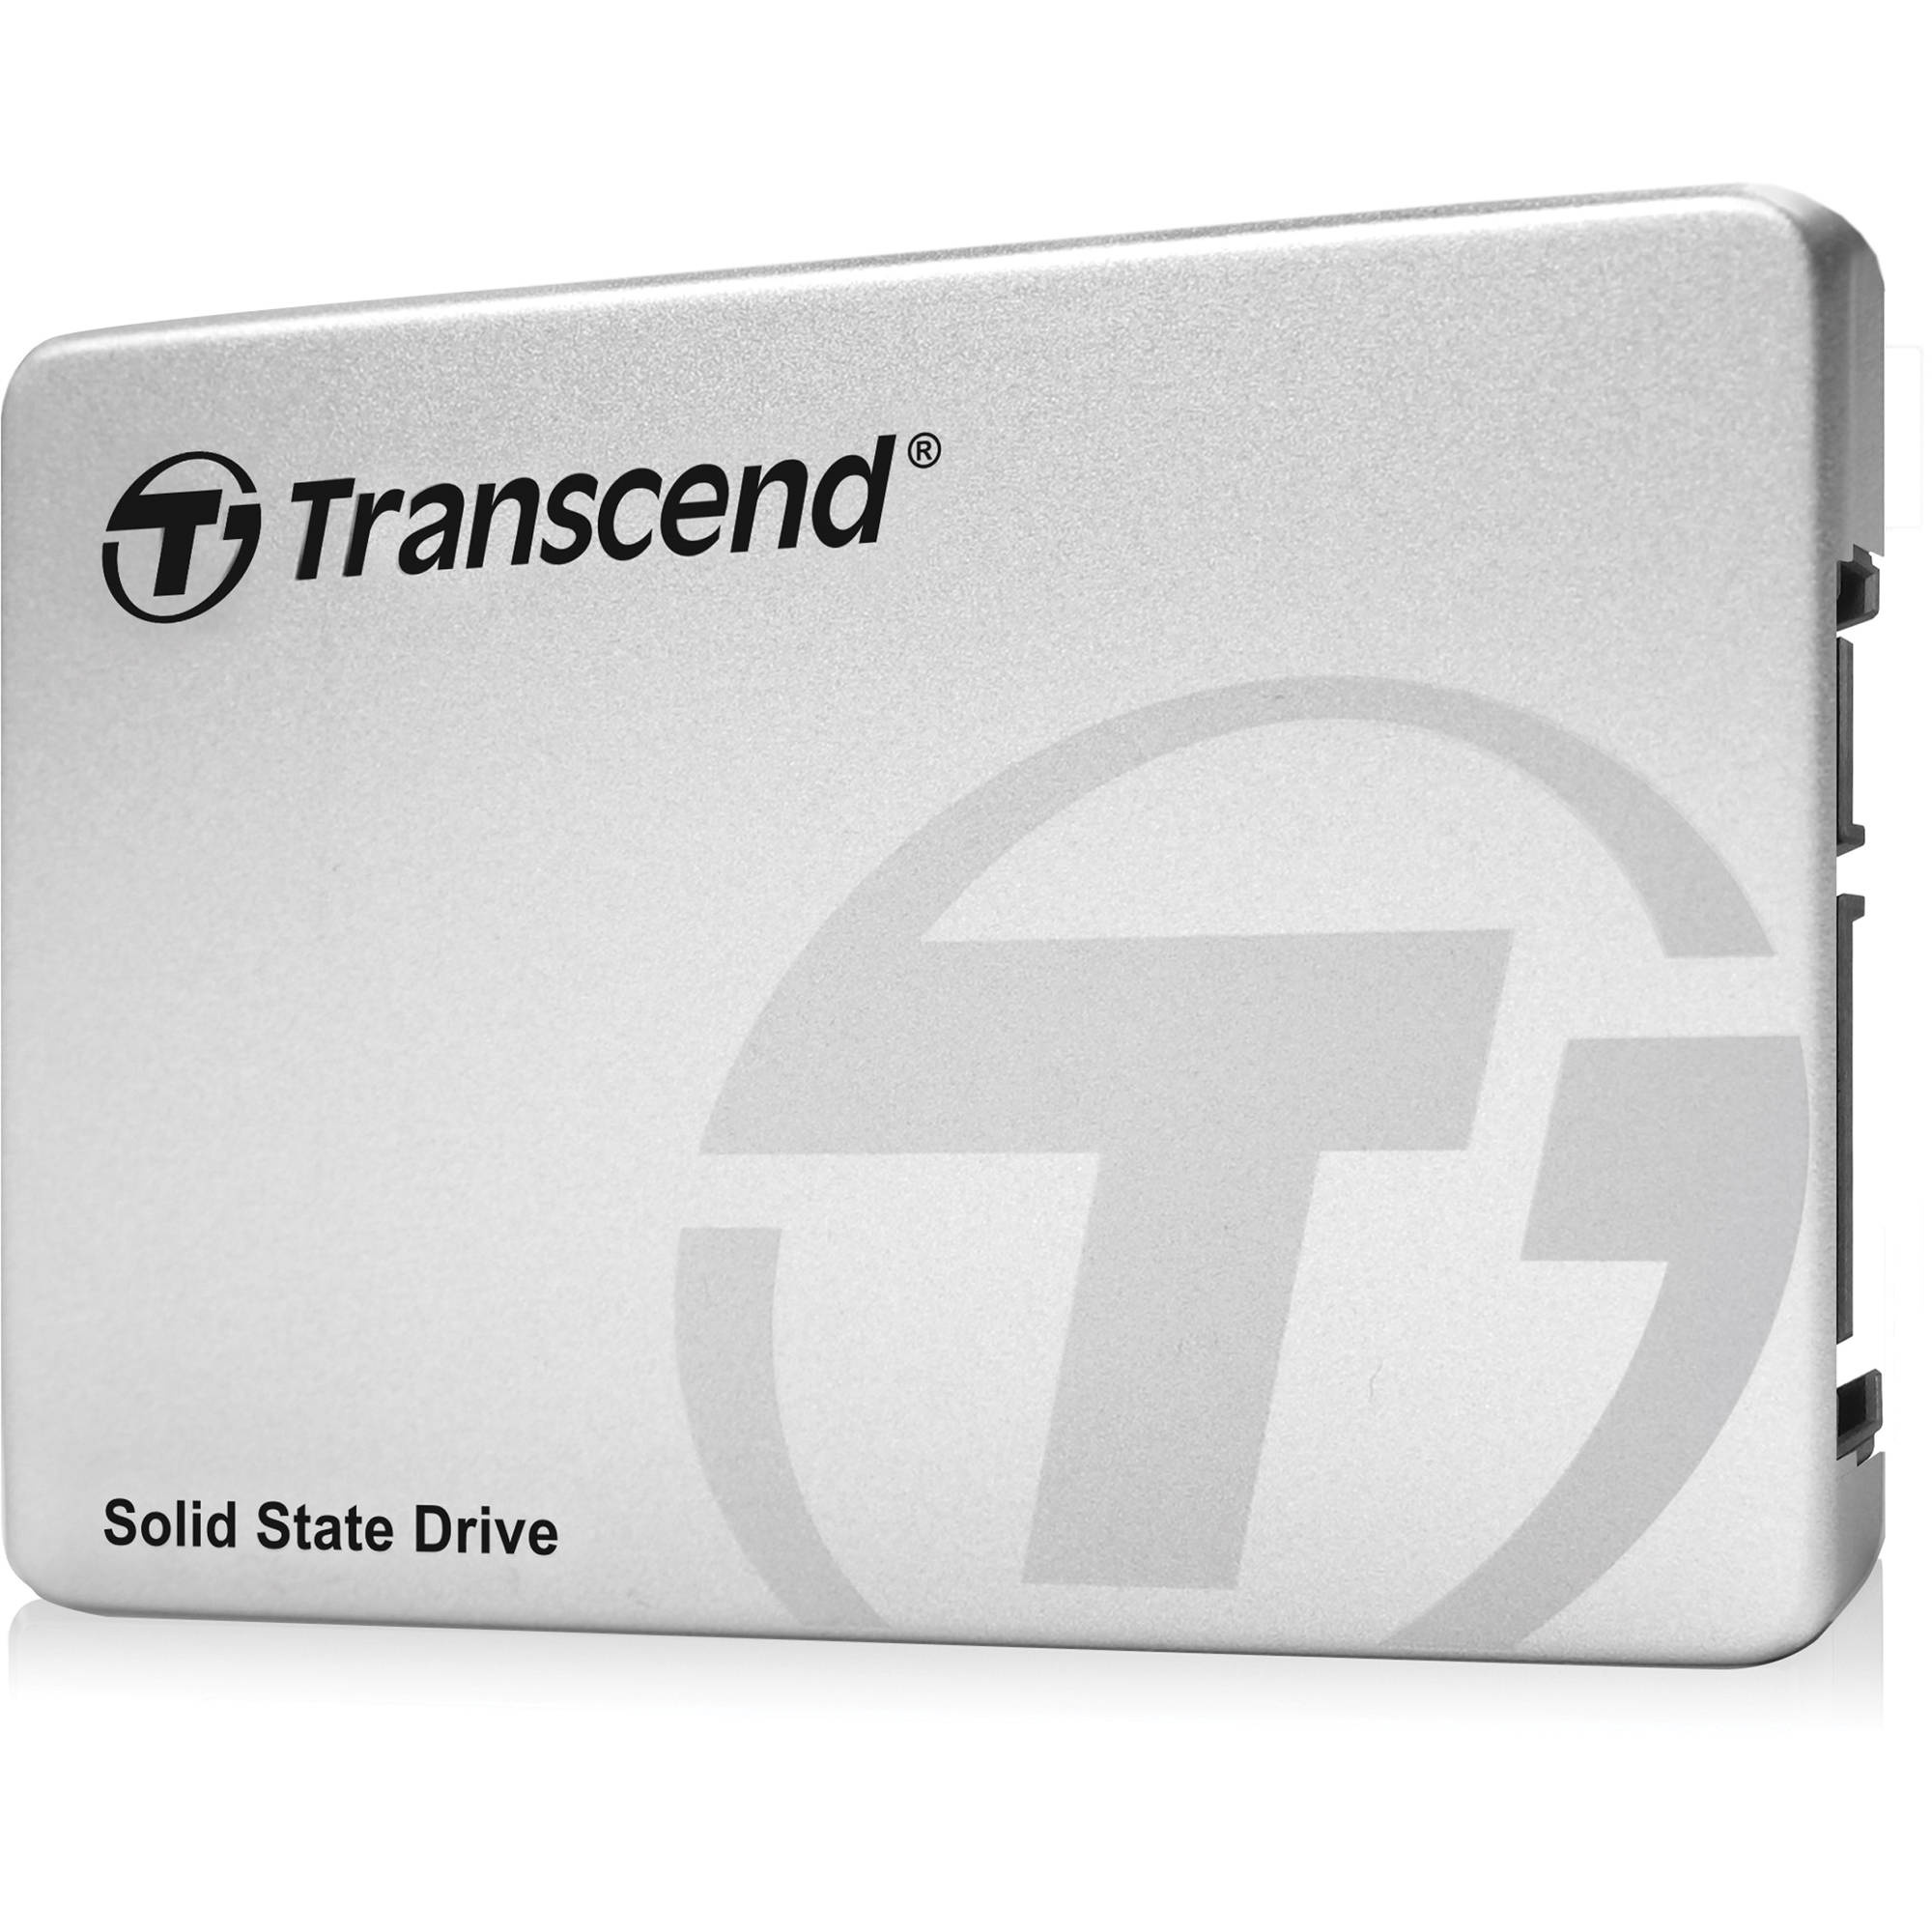 Transcend 256GB 2.5" SATA III SSD370S Internal SSD